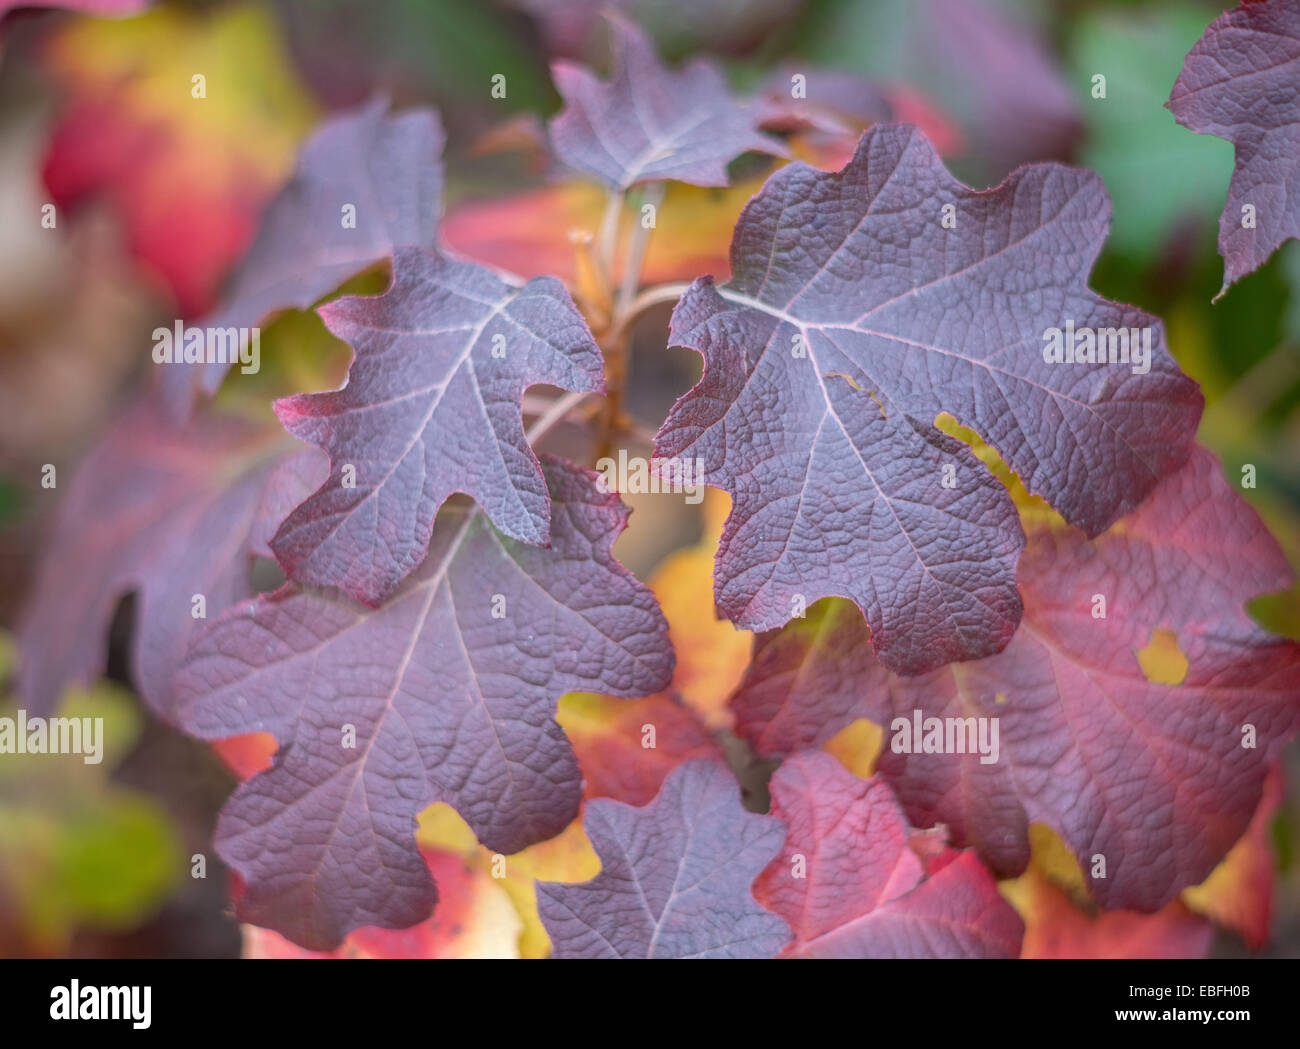 L'Hydrangea quercifolia rouge, violet et jaune feuilles d'automne Banque D'Images